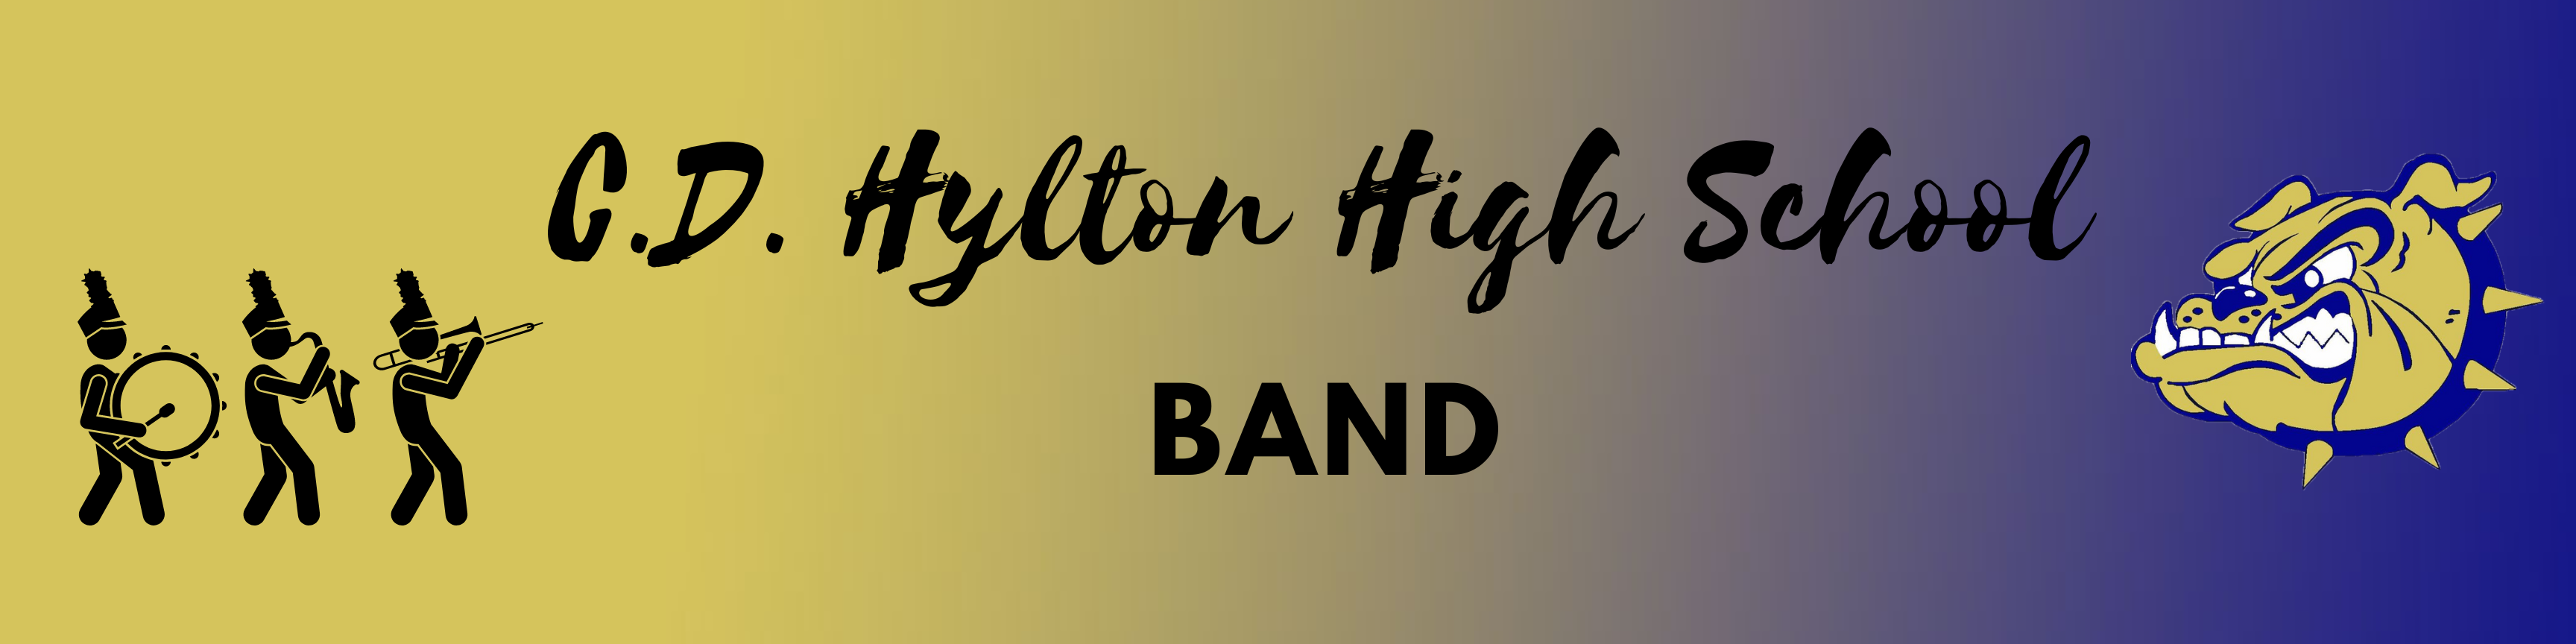 C.D. Hylton Band Header